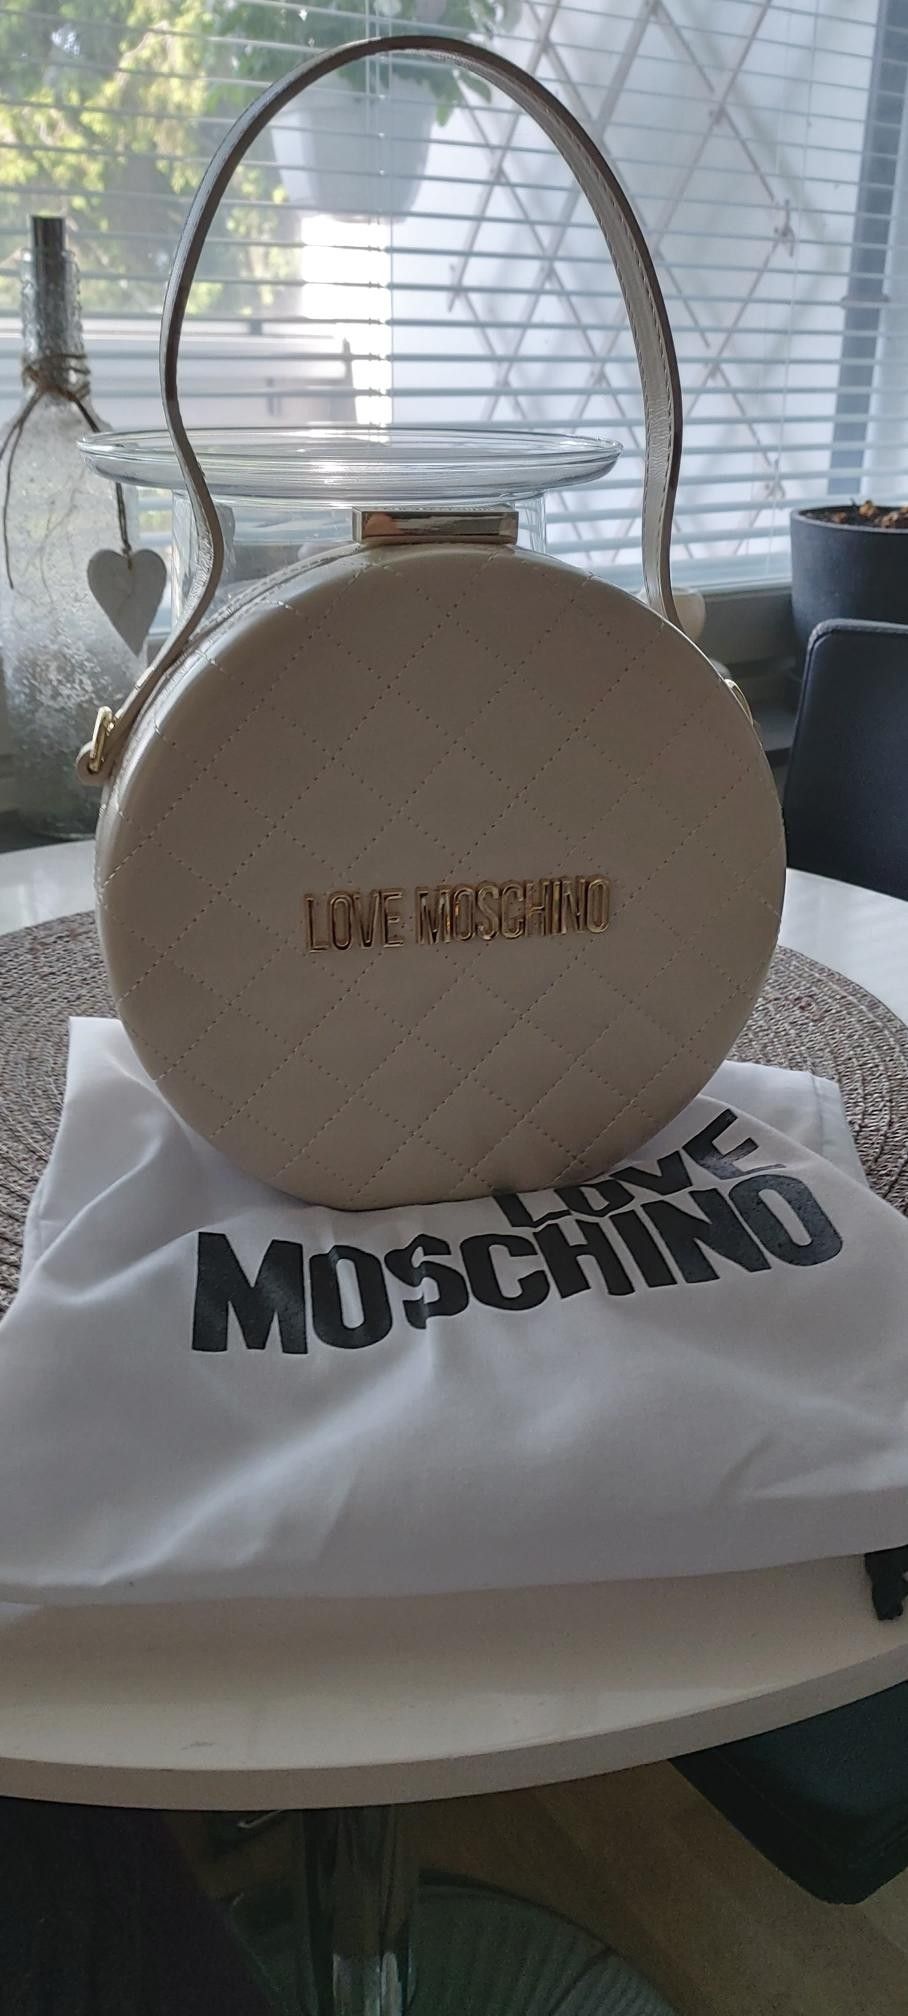 Love Moschino Laukku